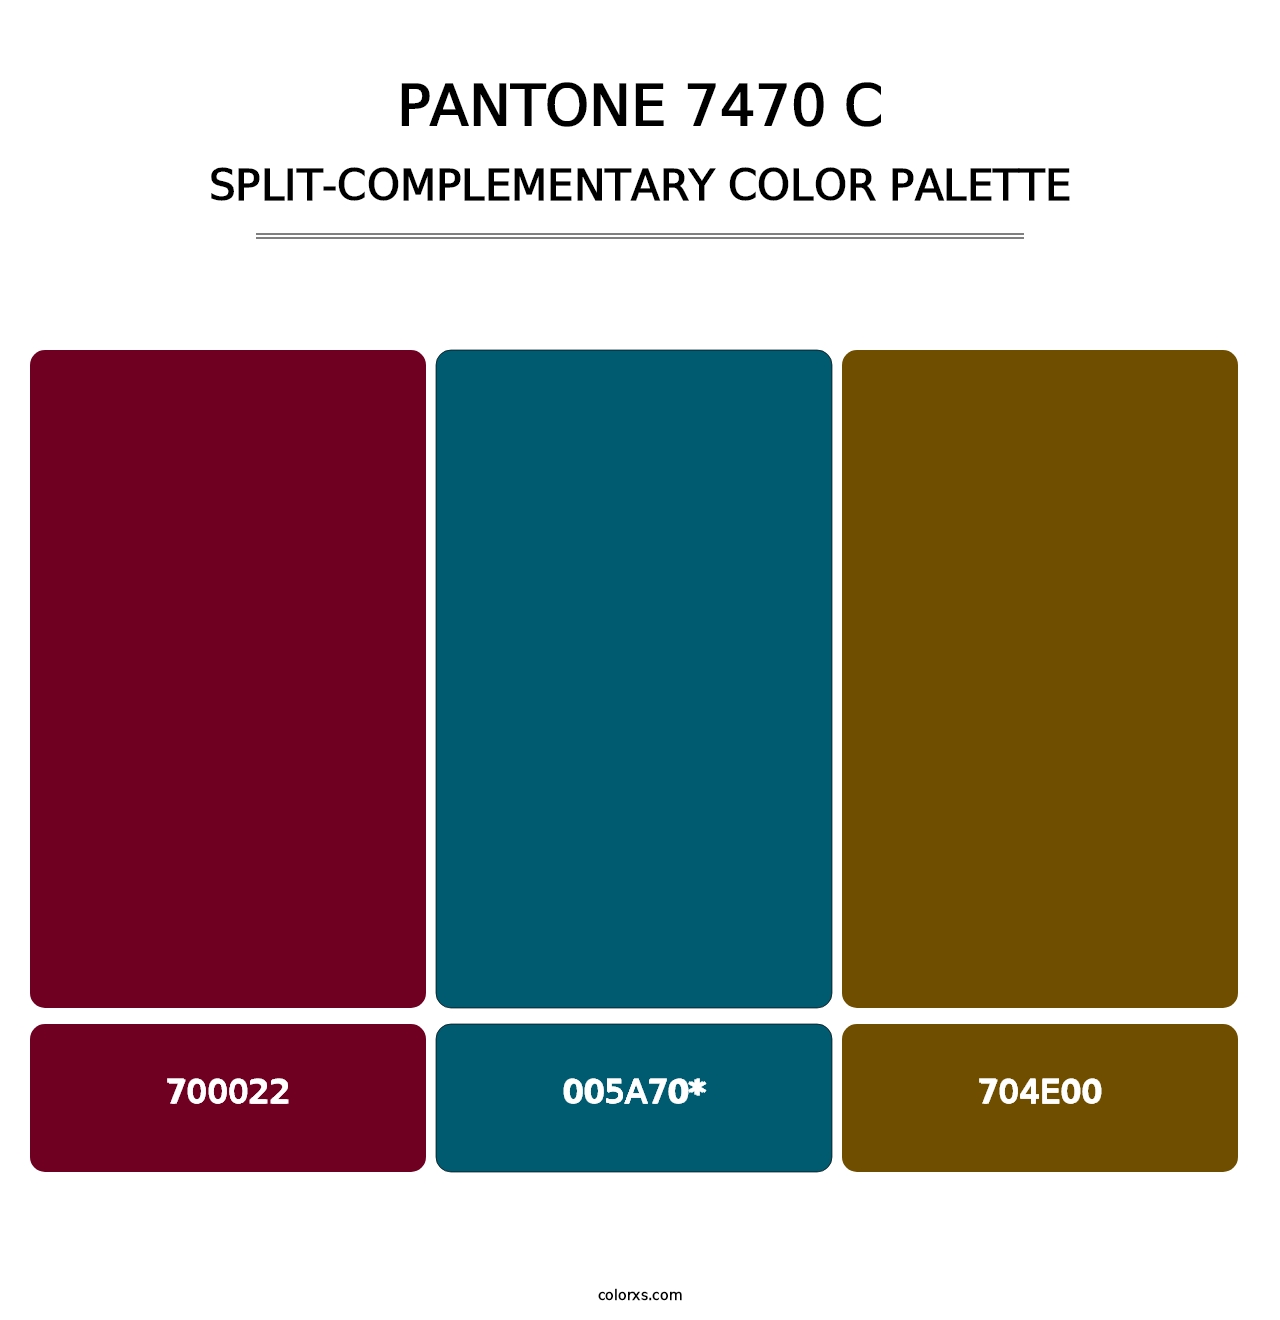 PANTONE 7470 C - Split-Complementary Color Palette